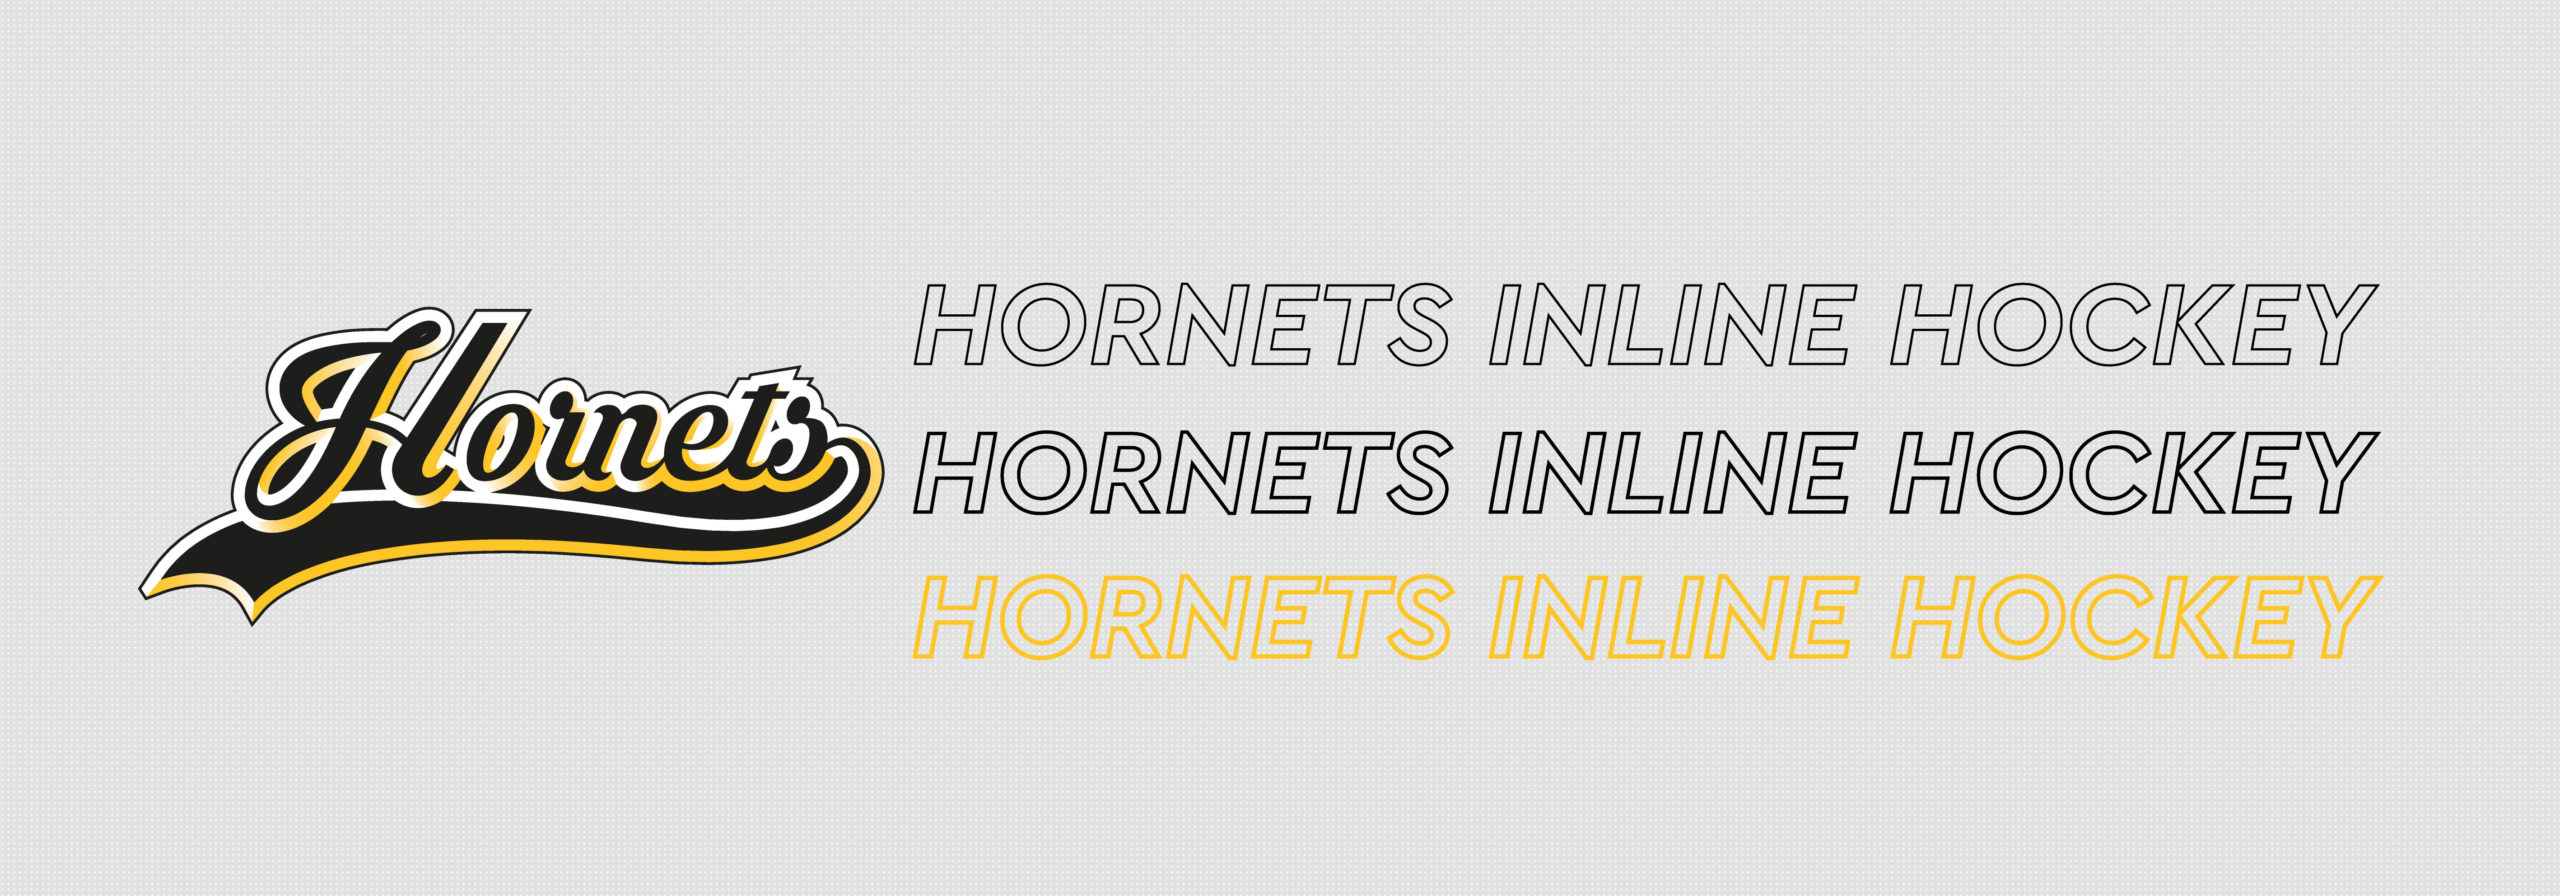 Hornets Inline Hockey Club